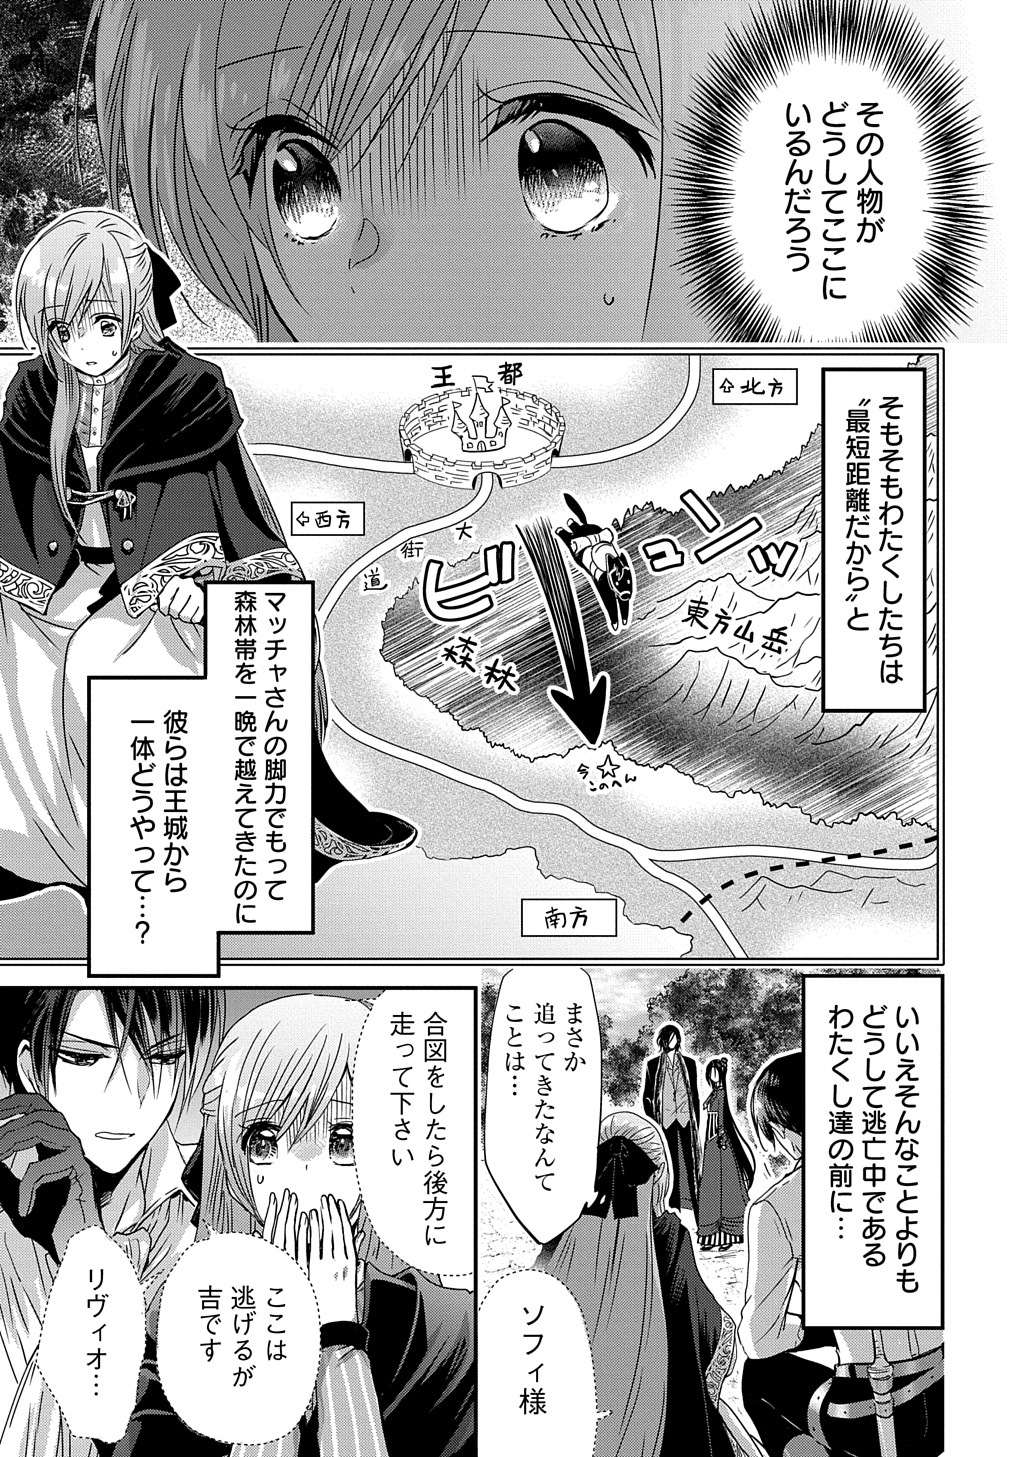 Konyakusha no Uwaki Genba wo Michatta no de Hajimari no Kane ga narimashita - Chapter 8 - Page 3